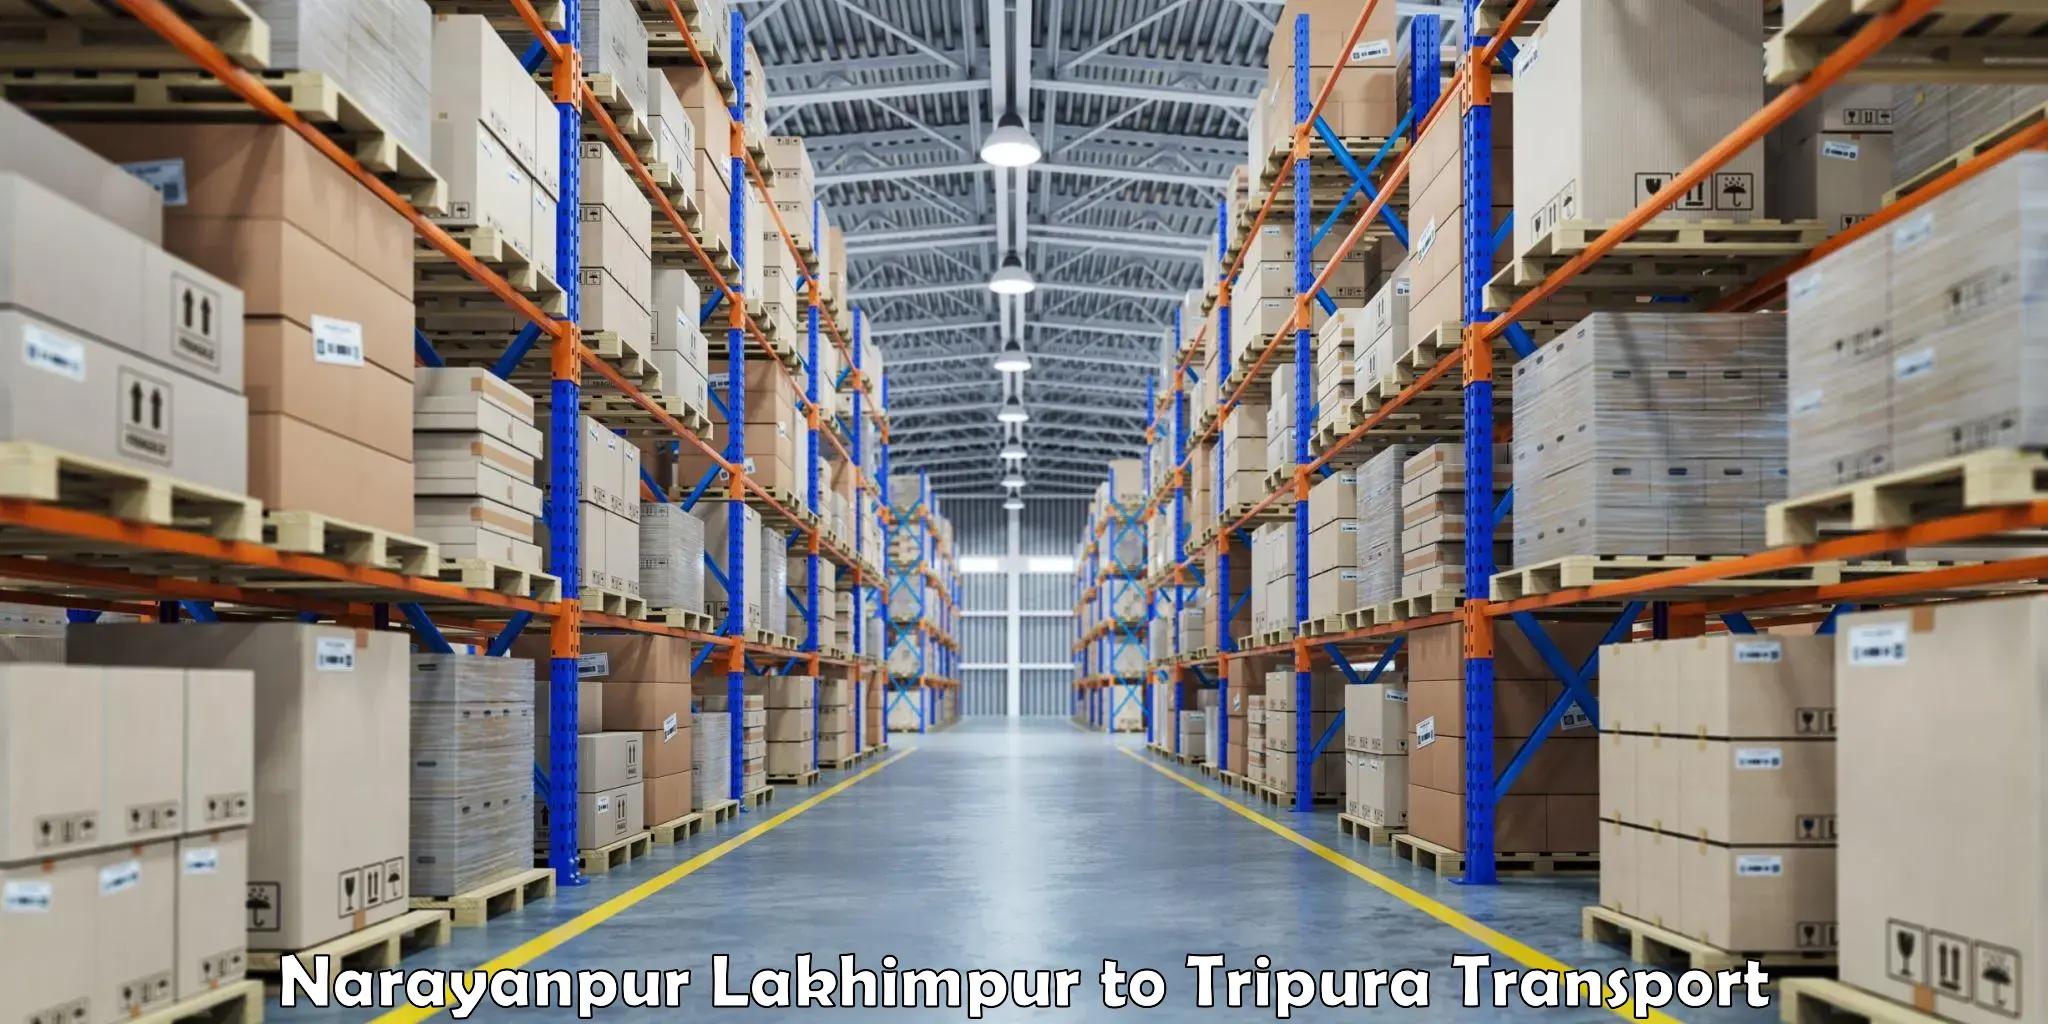 Furniture transport service Narayanpur Lakhimpur to Aambasa